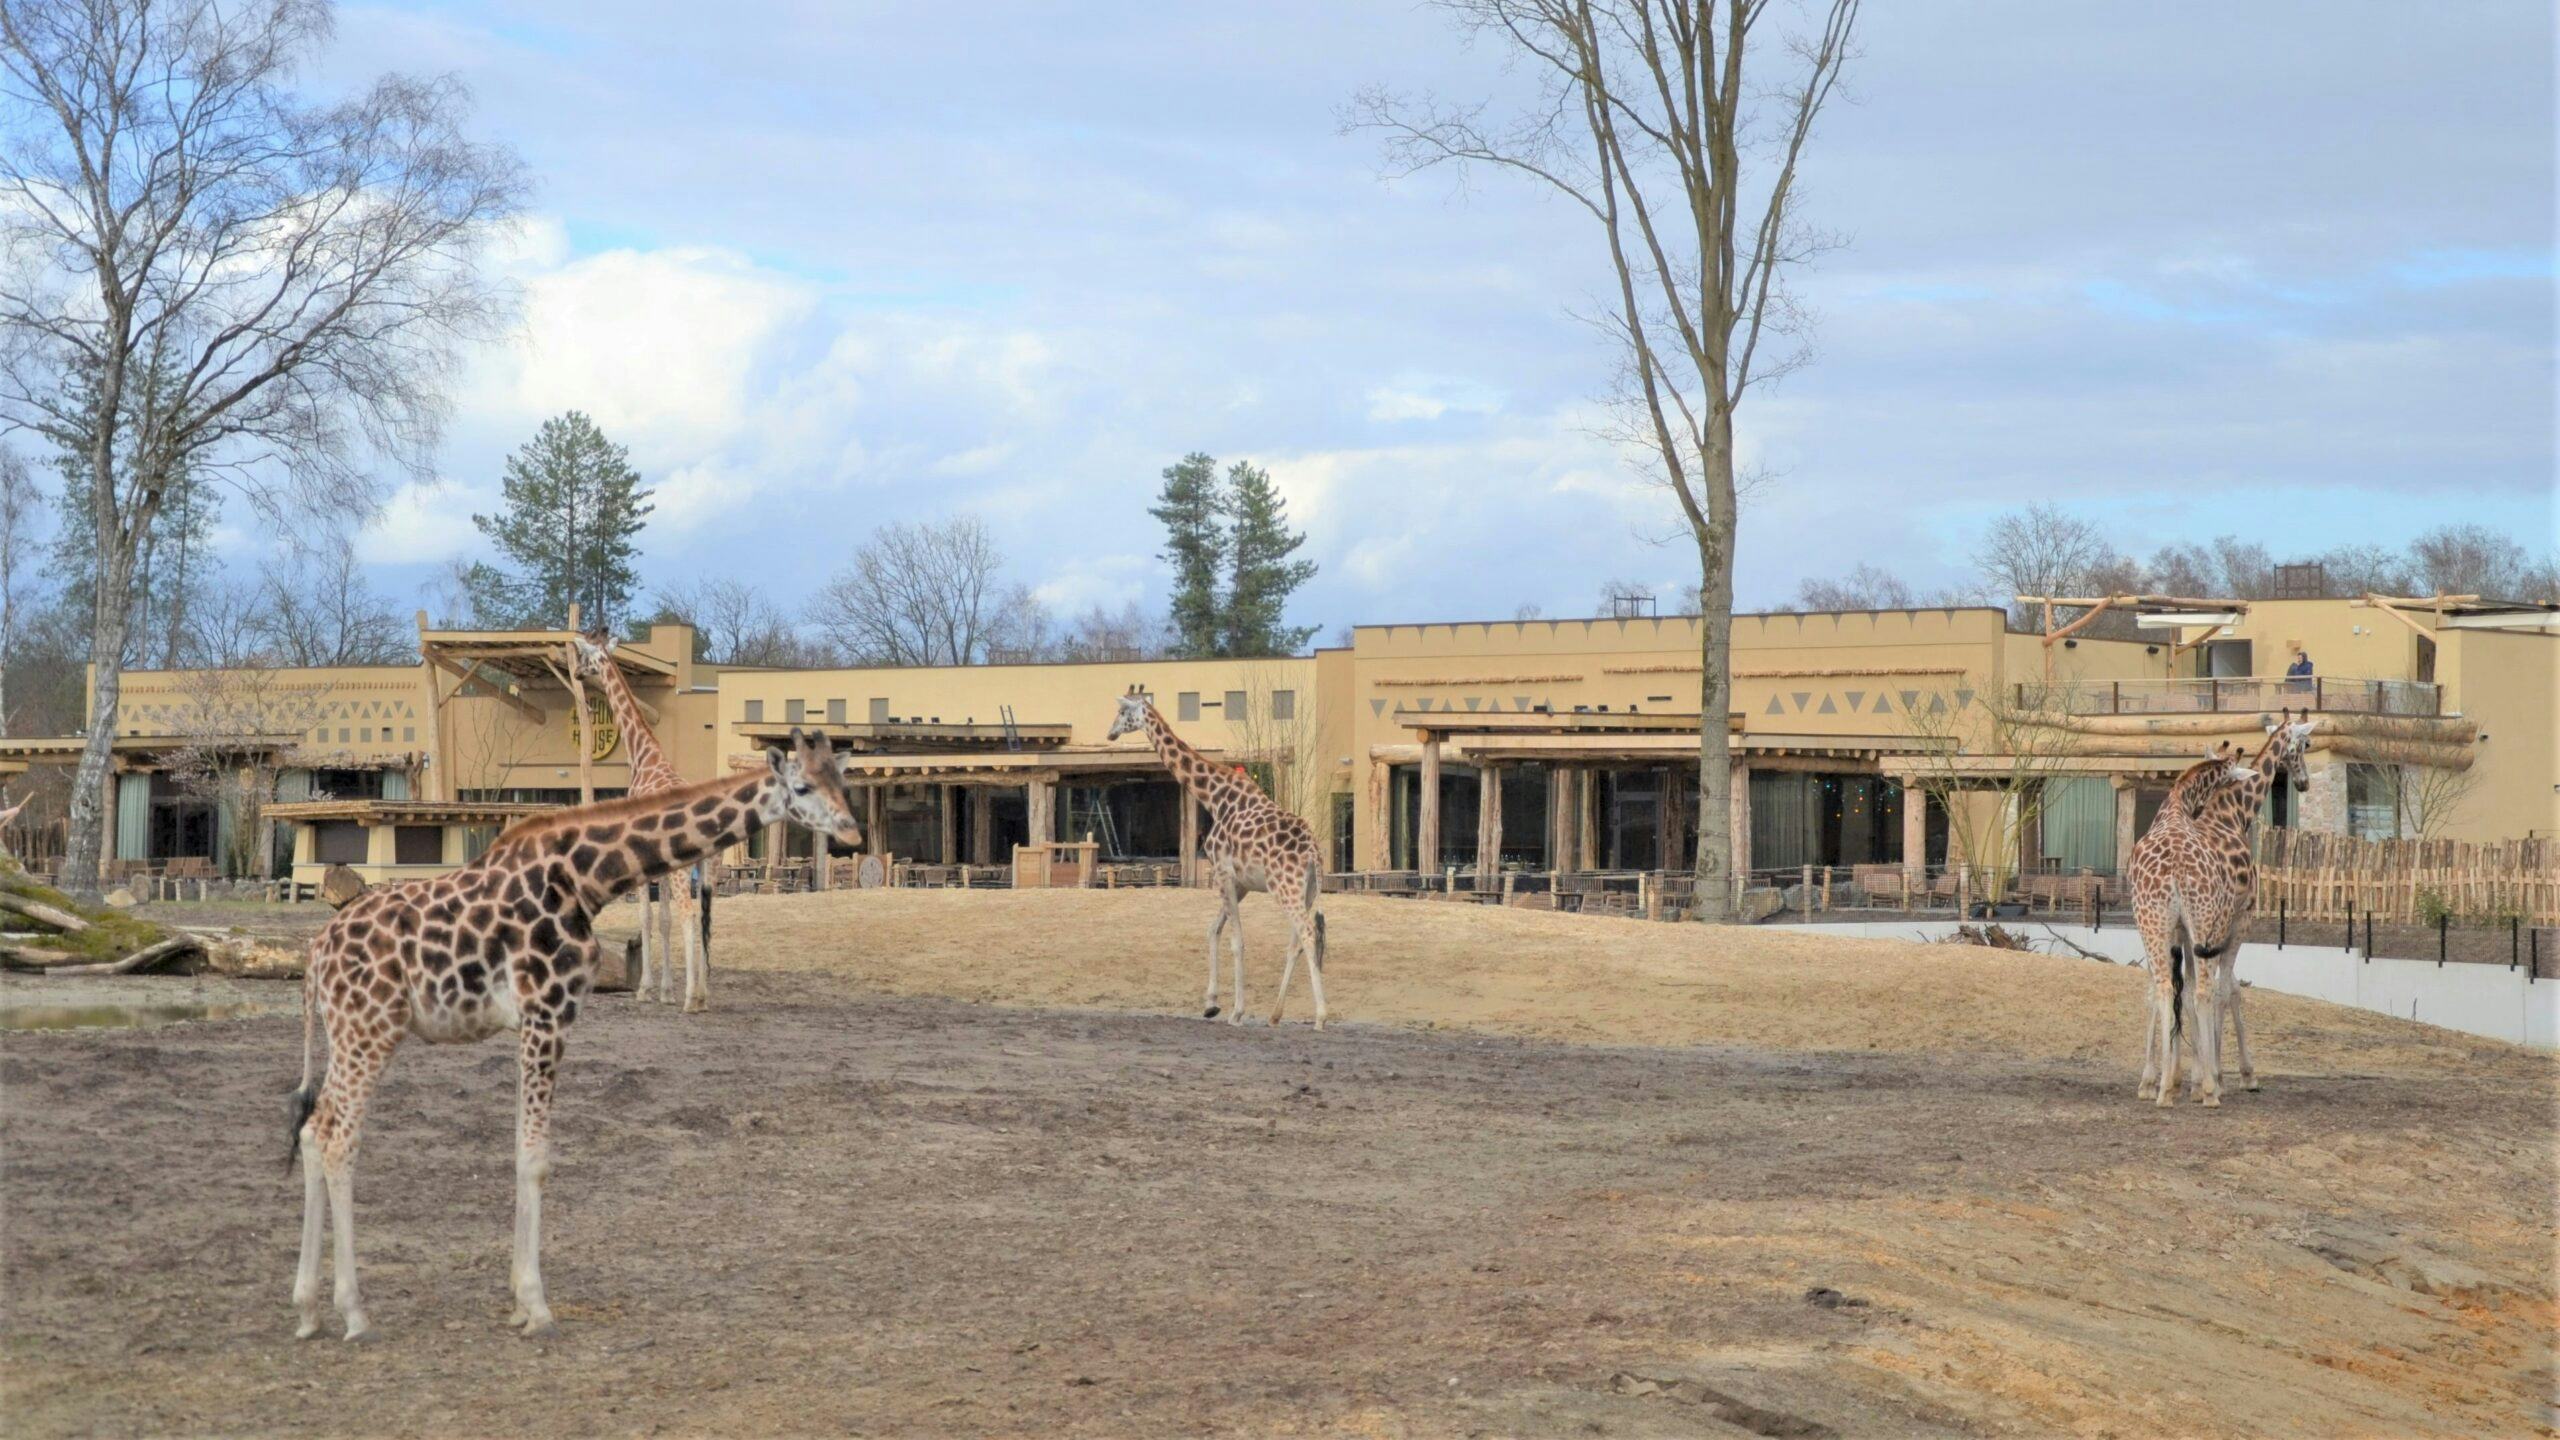 Safari Hotel Beekse Bergen officieel geopend